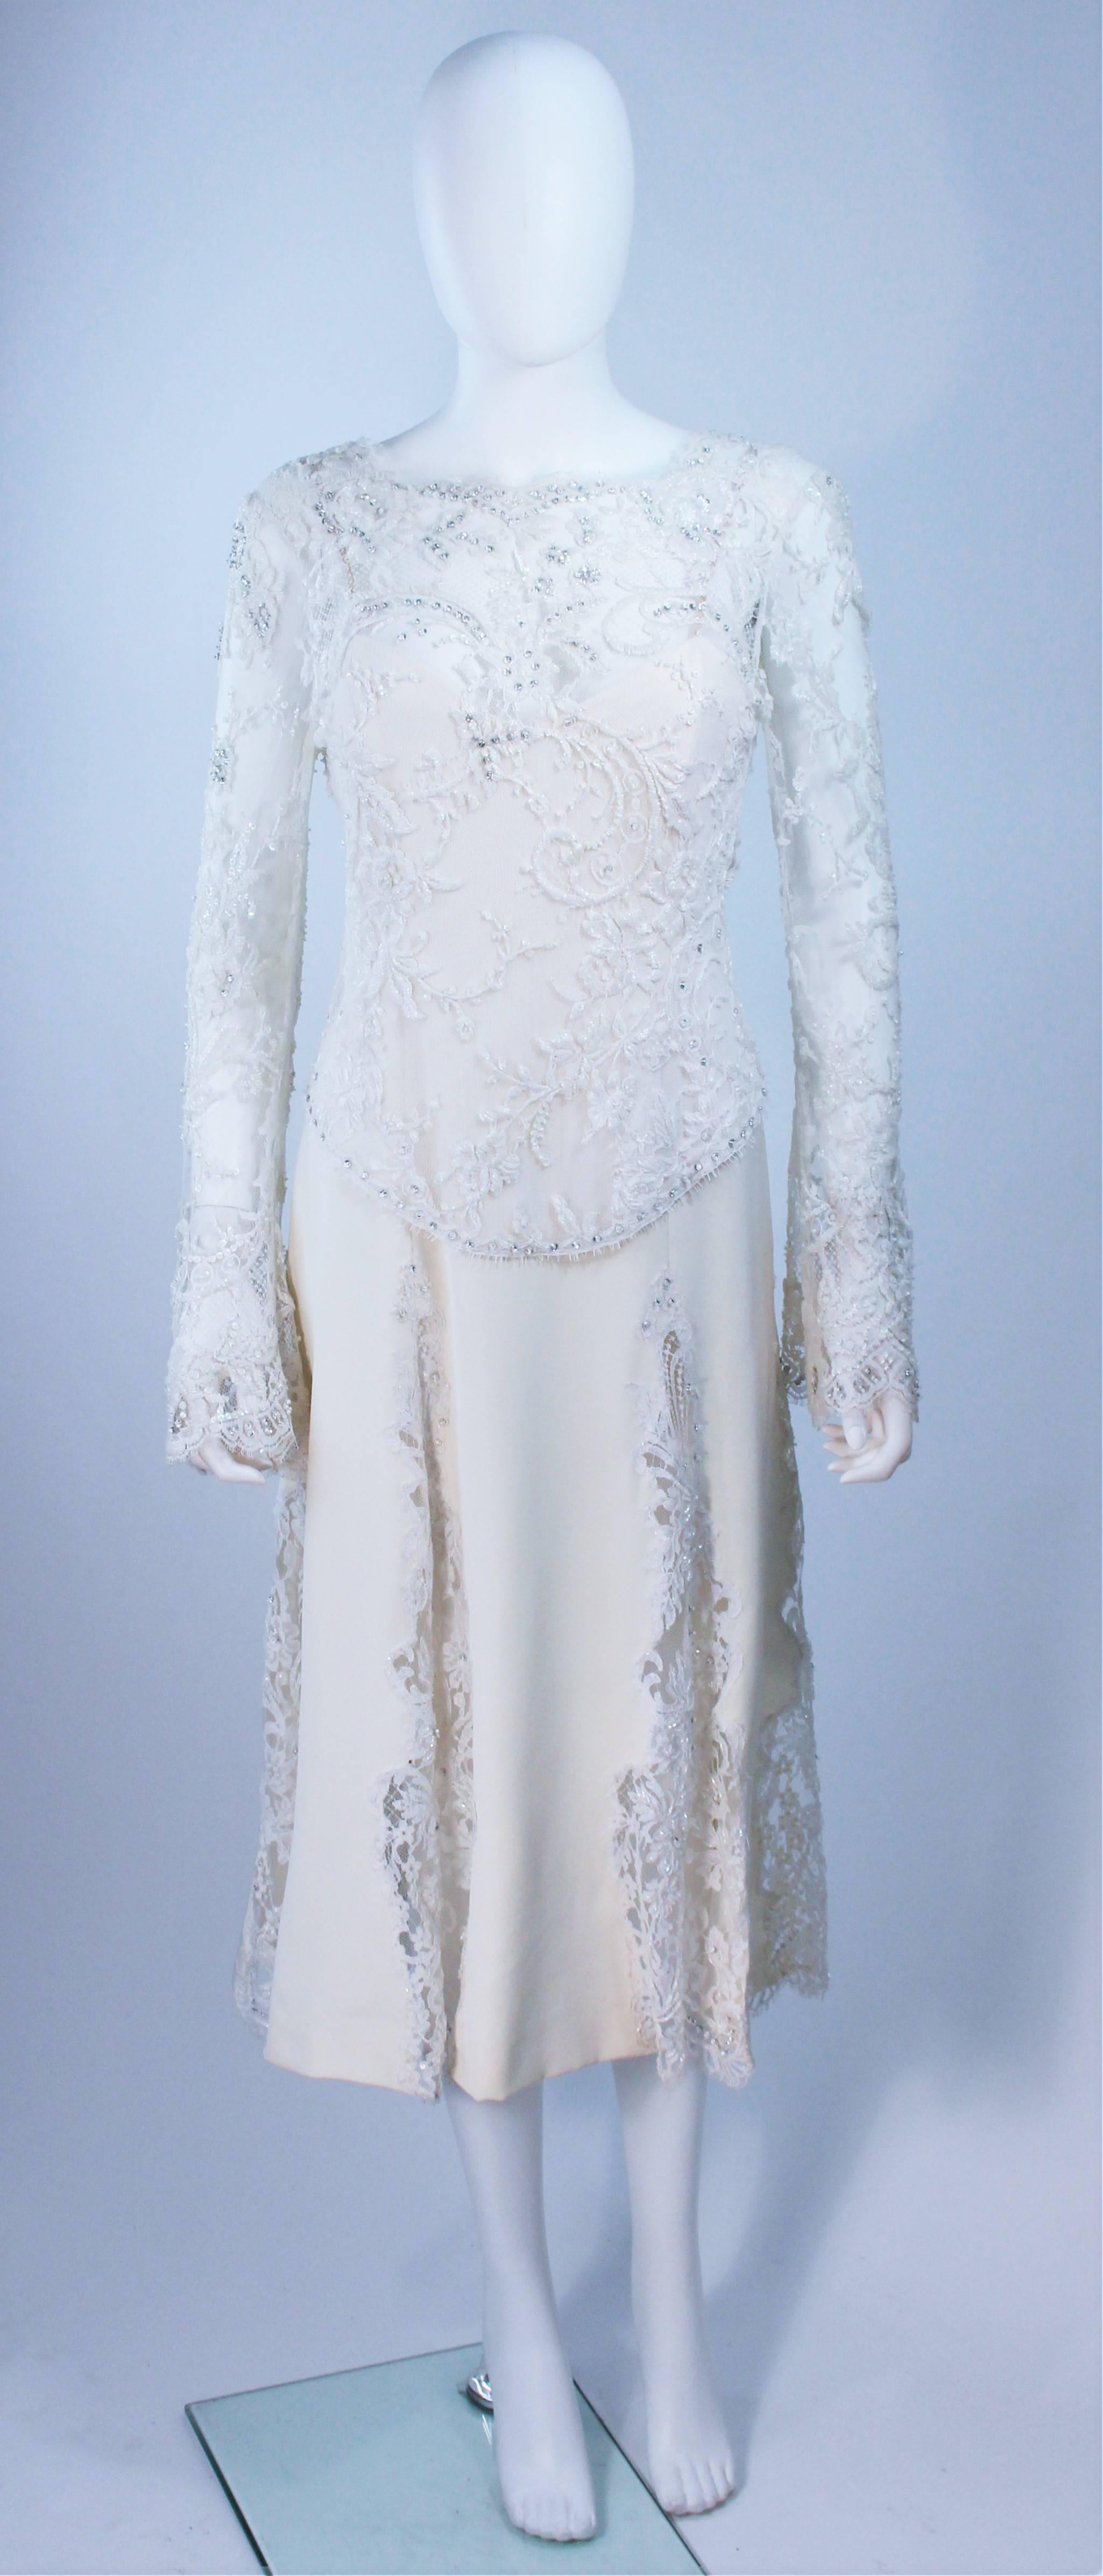  Ce Fe Zandi  la robe est composée d'une combinaison de soie blanche et de dentelle. La dentelle comporte des appliques de strass et de perles. Il y a une fermeture à glissière au centre du dos. Vintage, en excellent état. 

  **Veuillez croiser